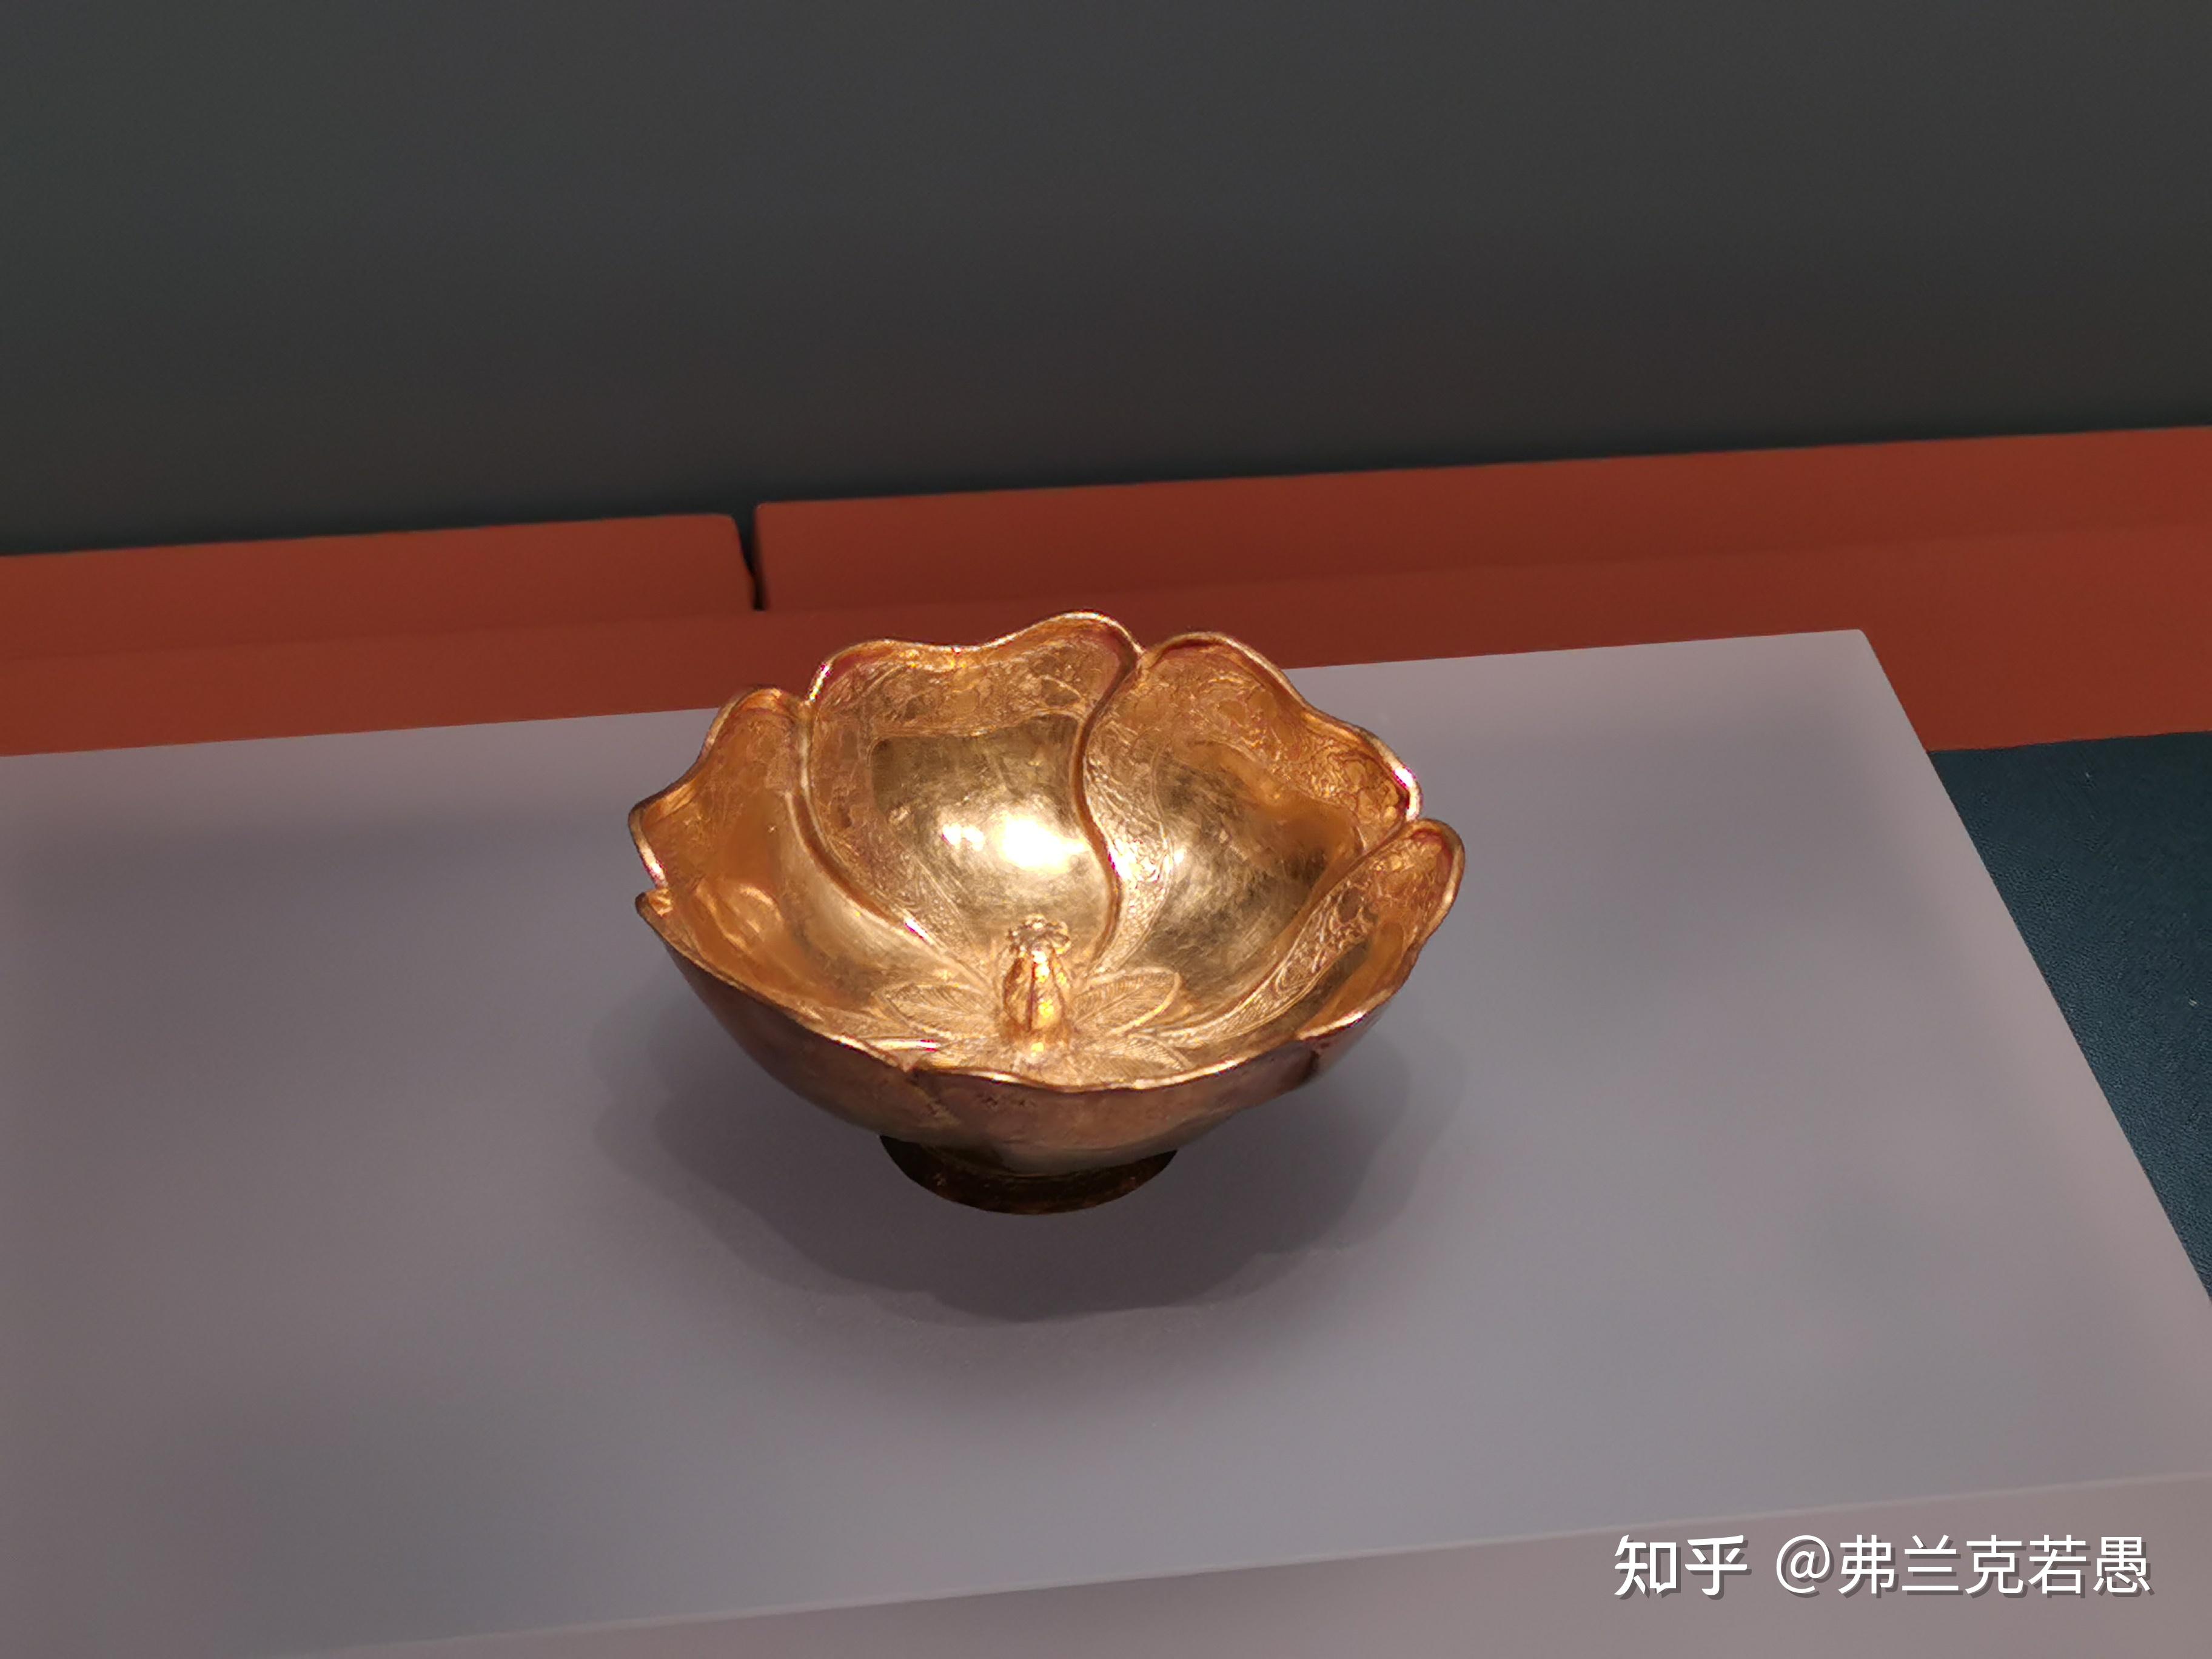 安徽省博物馆藏品中具有特色的文物有哪些?